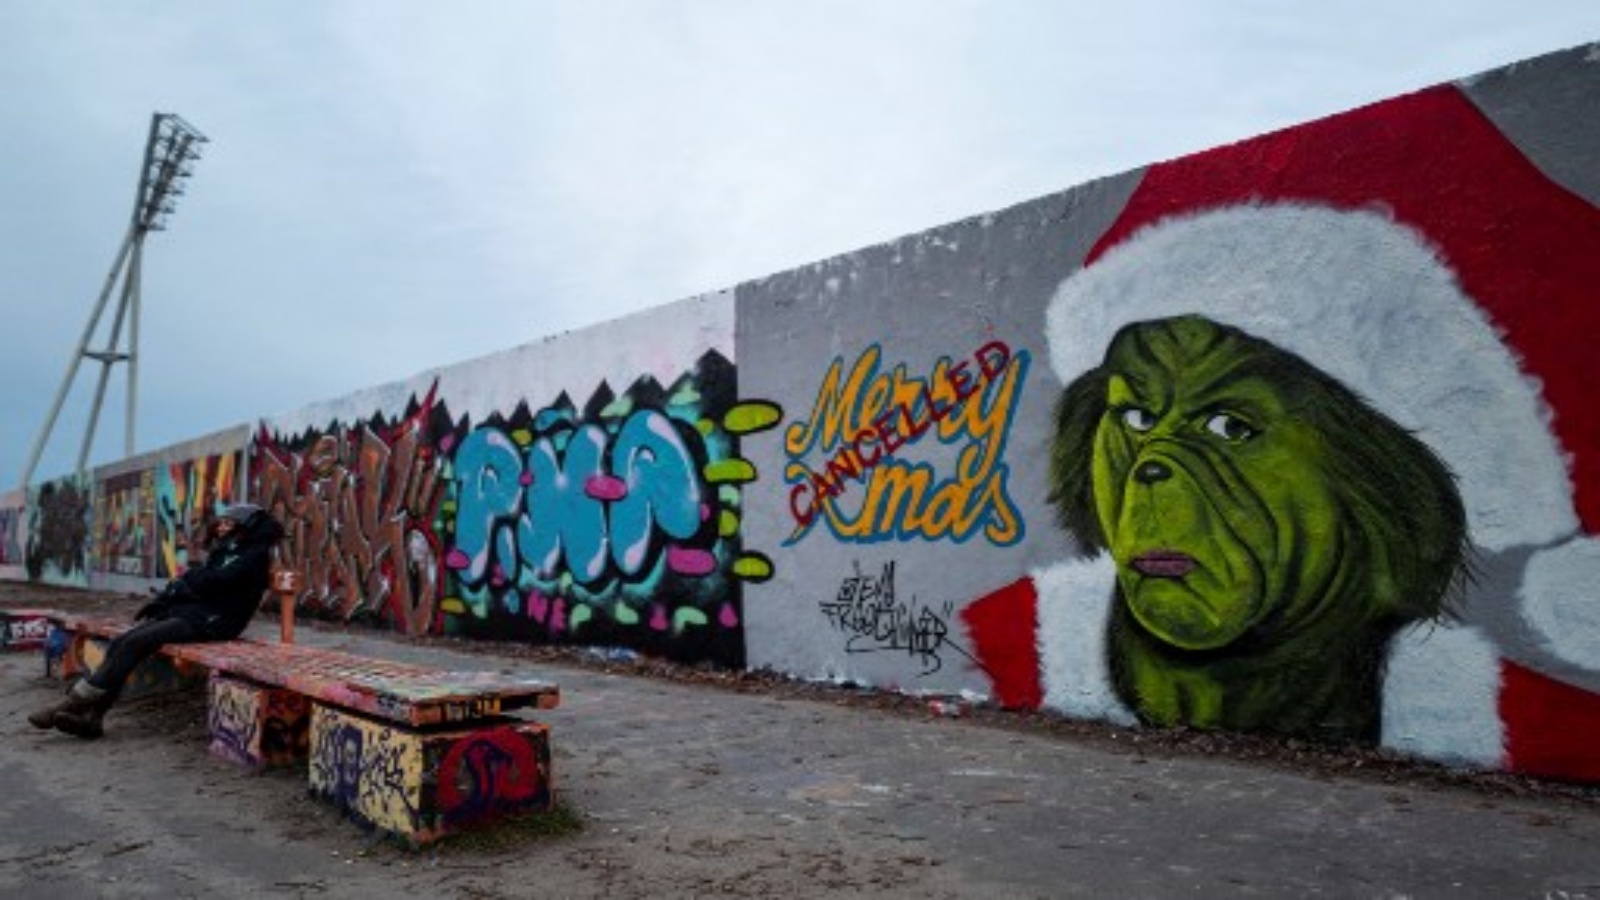 لوحة جدارية لفنان الجرافيتي إيم فريتينكر تظهر صورة شخصية غرينش للمؤلف الأمريكي الدكتور سوس مع ختم 